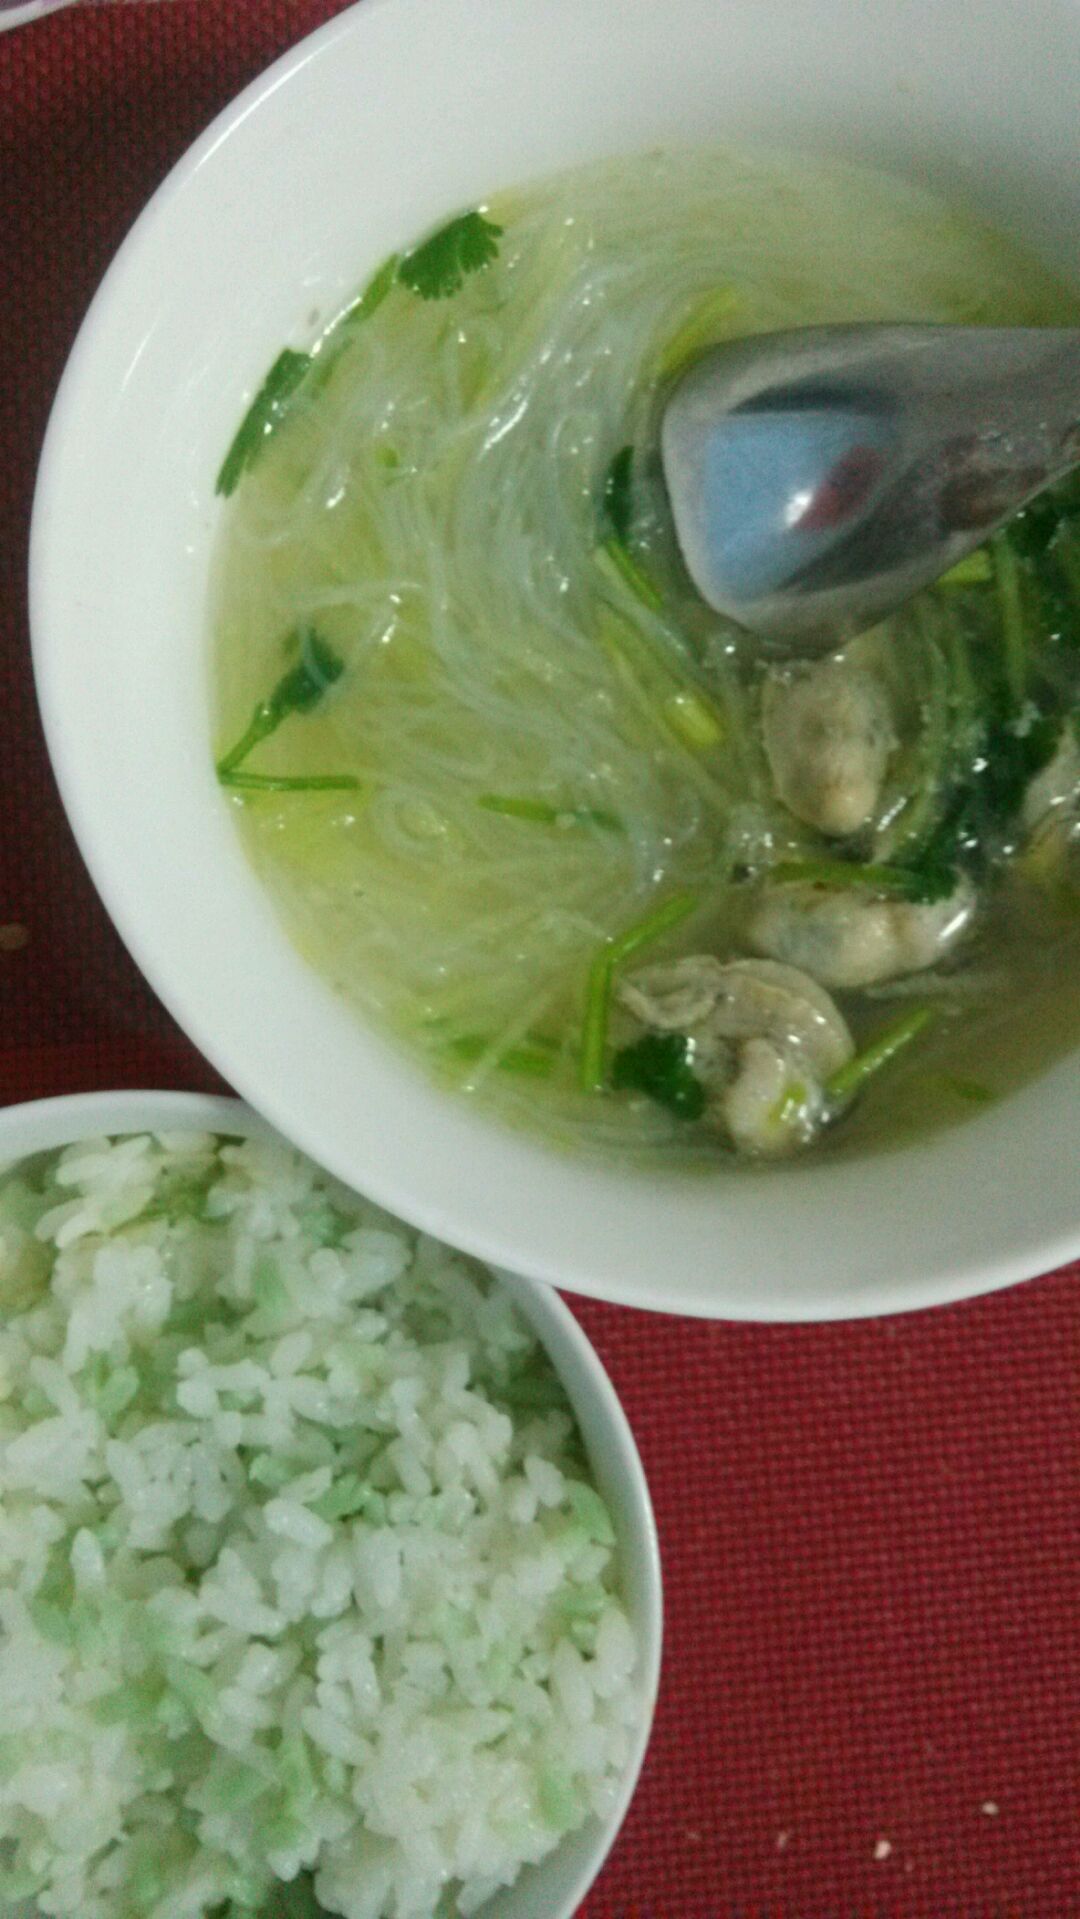 一碗汤的温暖：牛肉丸白萝卜汤 - 家在深圳